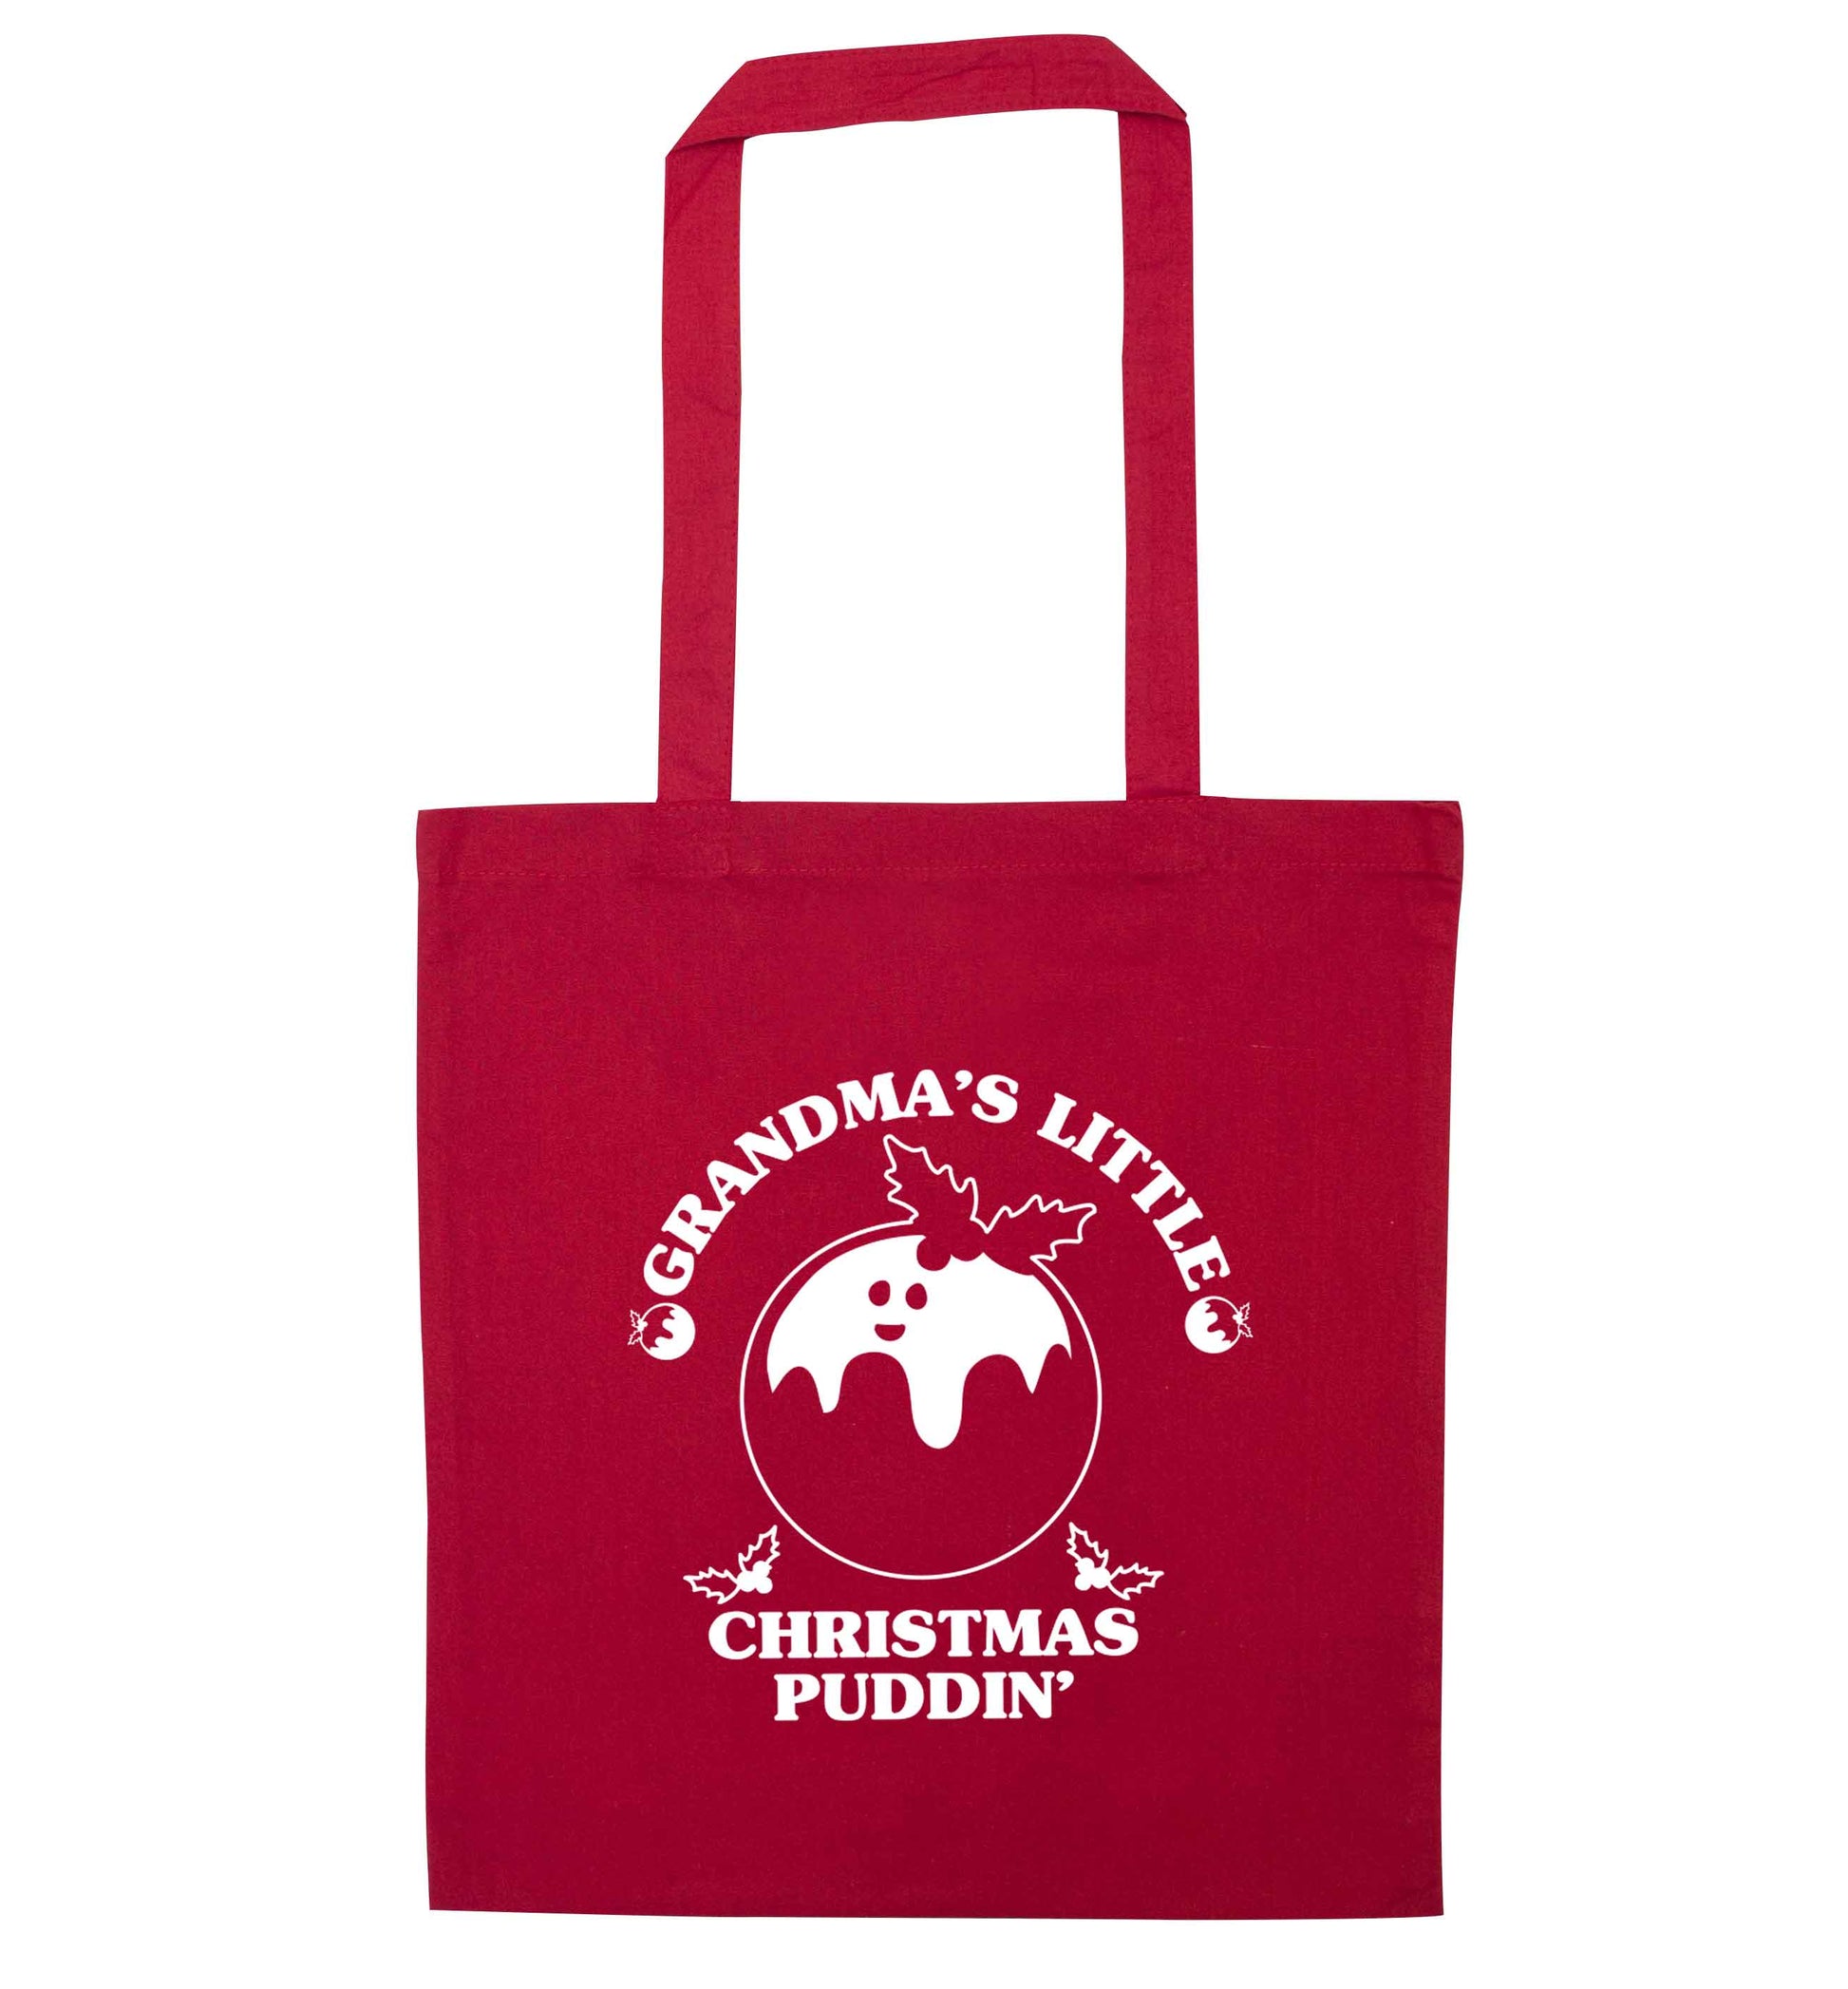 Grandma's little Christmas puddin' red tote bag